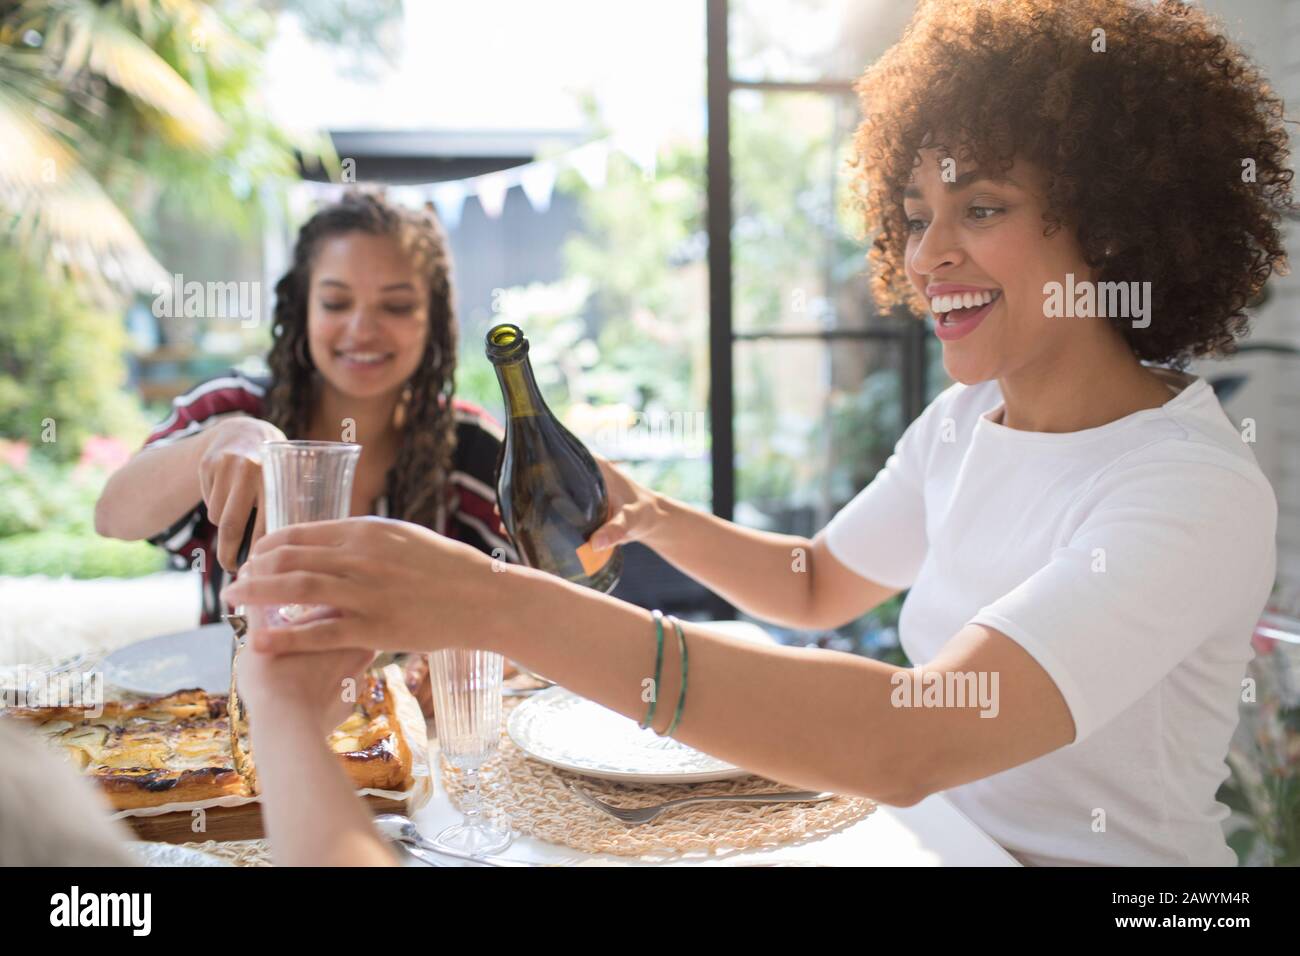 Fröhliche junge Frau, die Wein für einen Freund am Tisch gießt Stockfoto